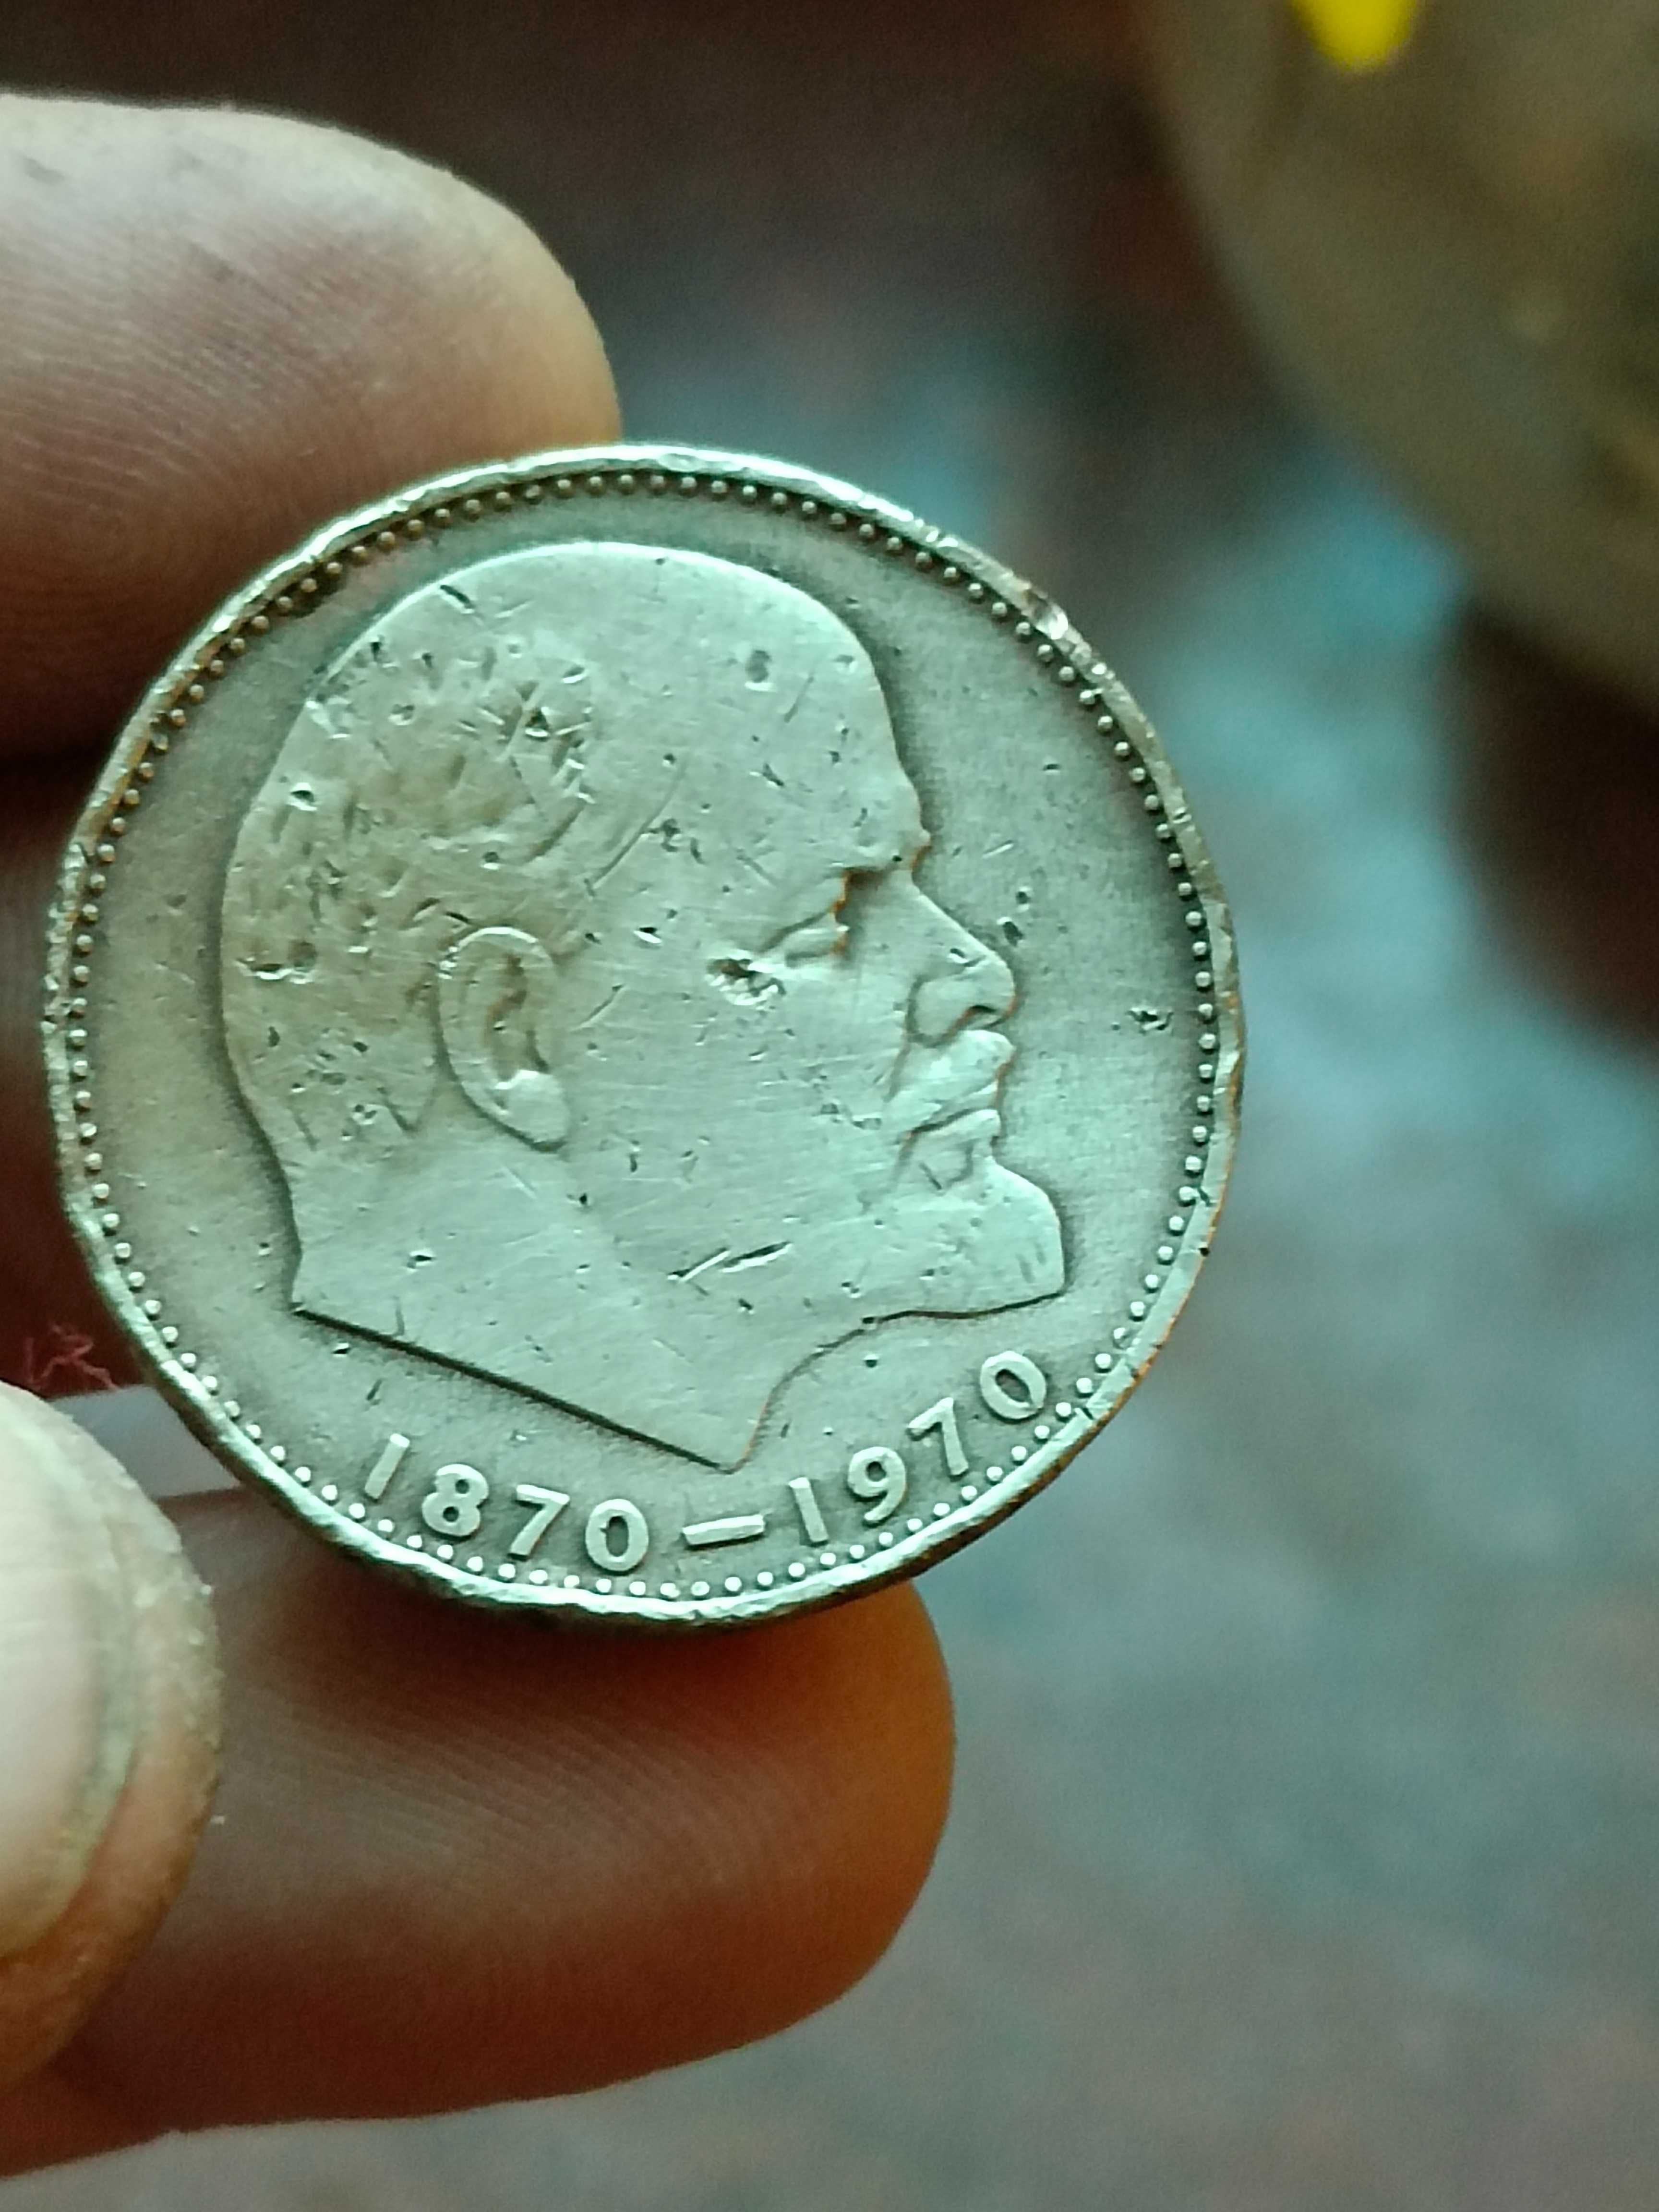 Sprzedam monete 1 rubel 1970r